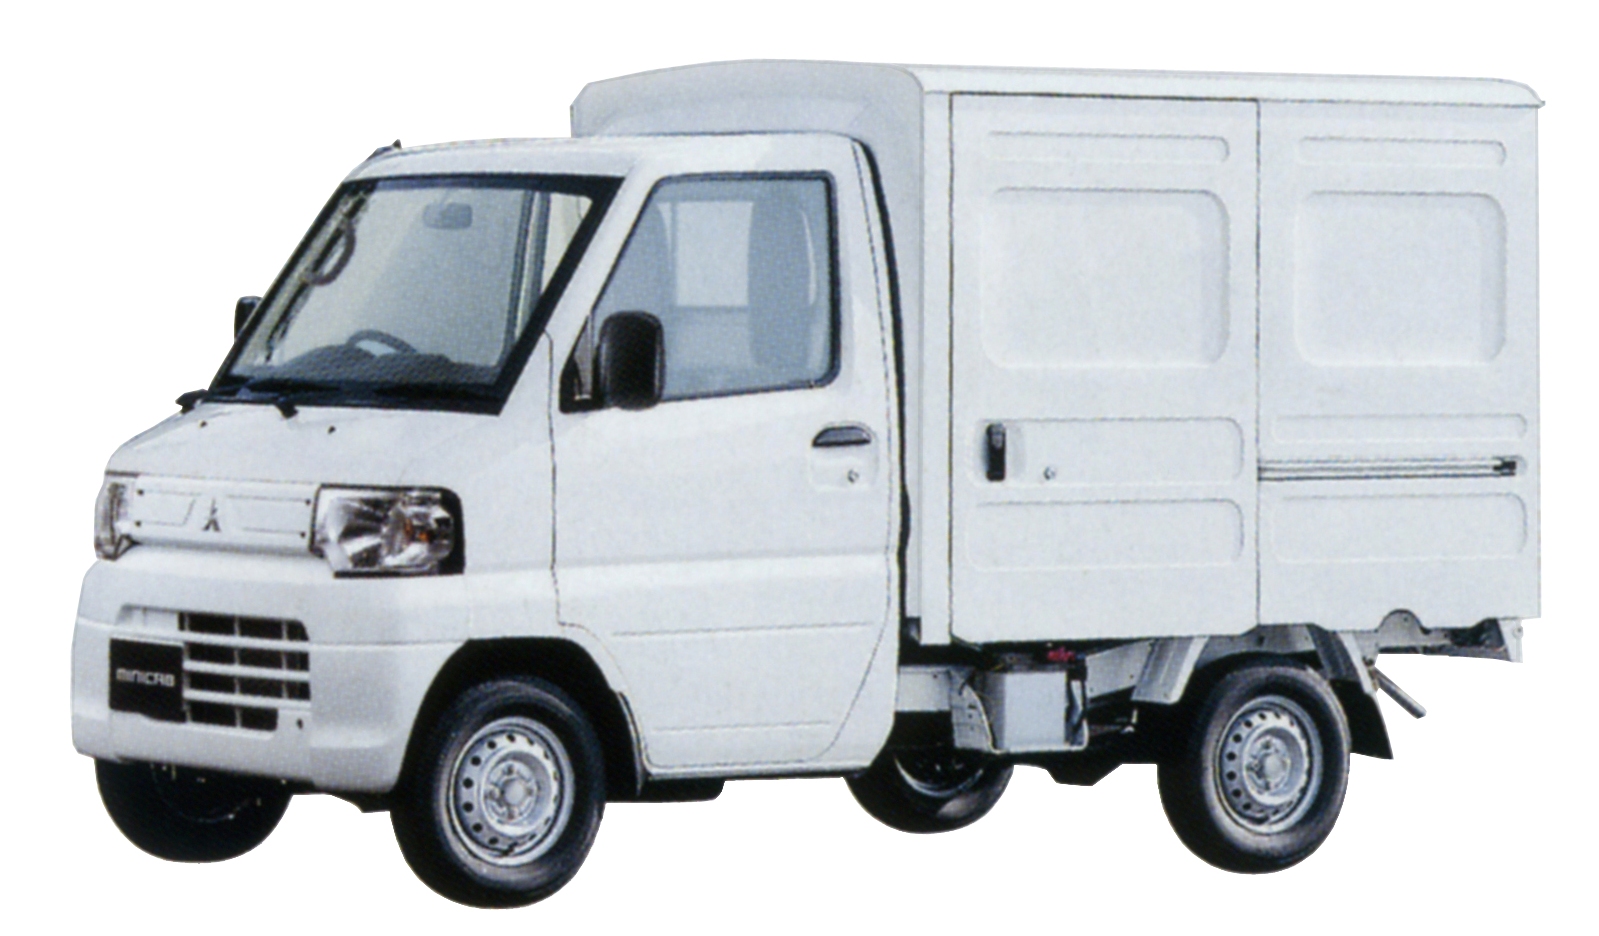 Микро грузовики. Mitsubishi Minicab 2004 рефрижератор. Тойота Дюна 1.5 тонны фургон. Toyota TOYOACE 4wd грузовик. Митсубиси Миникаб грузовик.